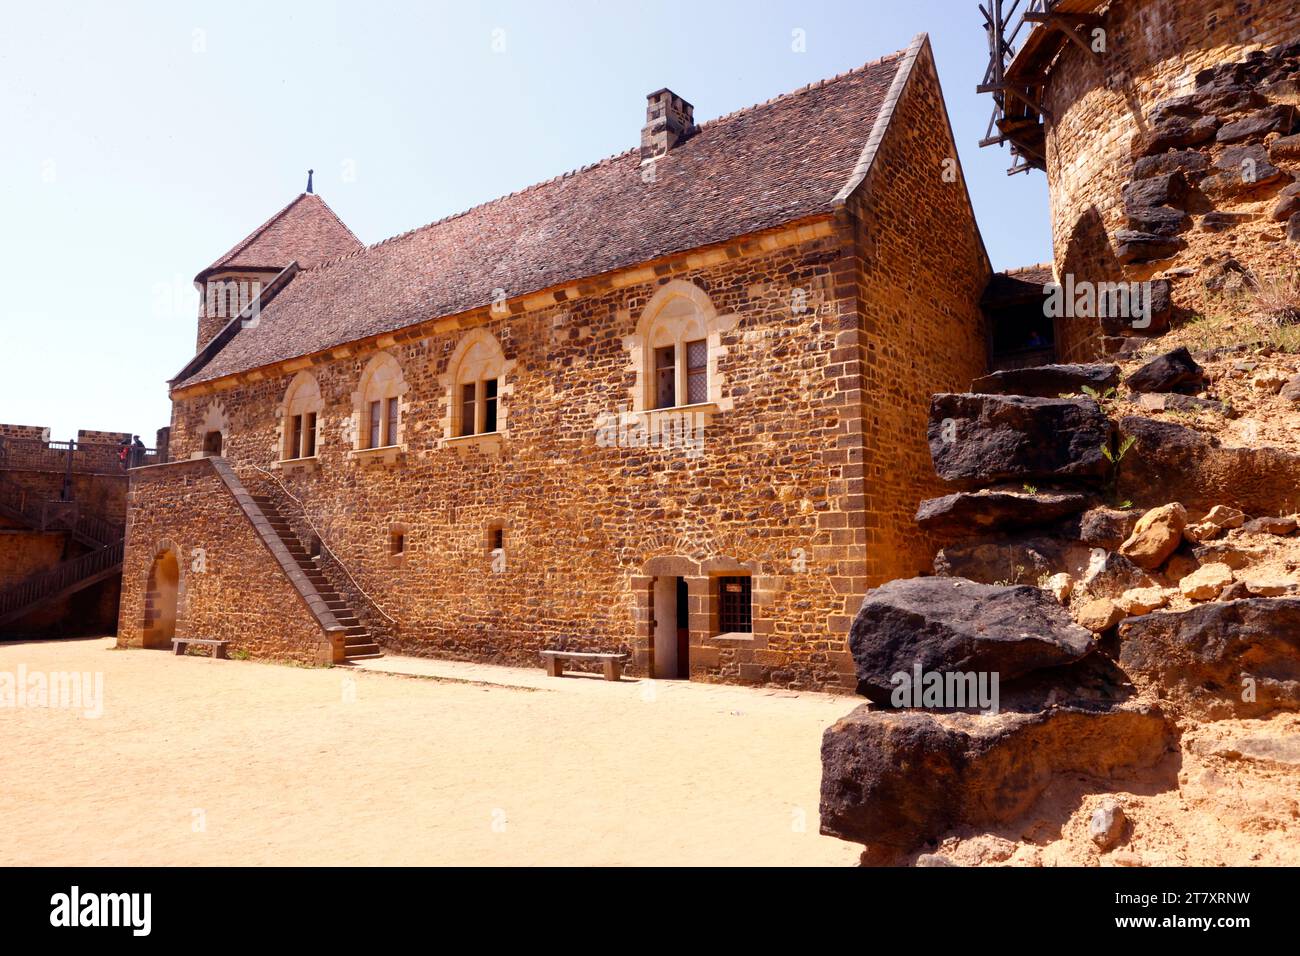 Château de Guedelon, site médiéval, construction d'un château, utilisant les techniques et matériaux utilisés au Moyen âge, Treigny, Yonne, France, Europe Banque D'Images